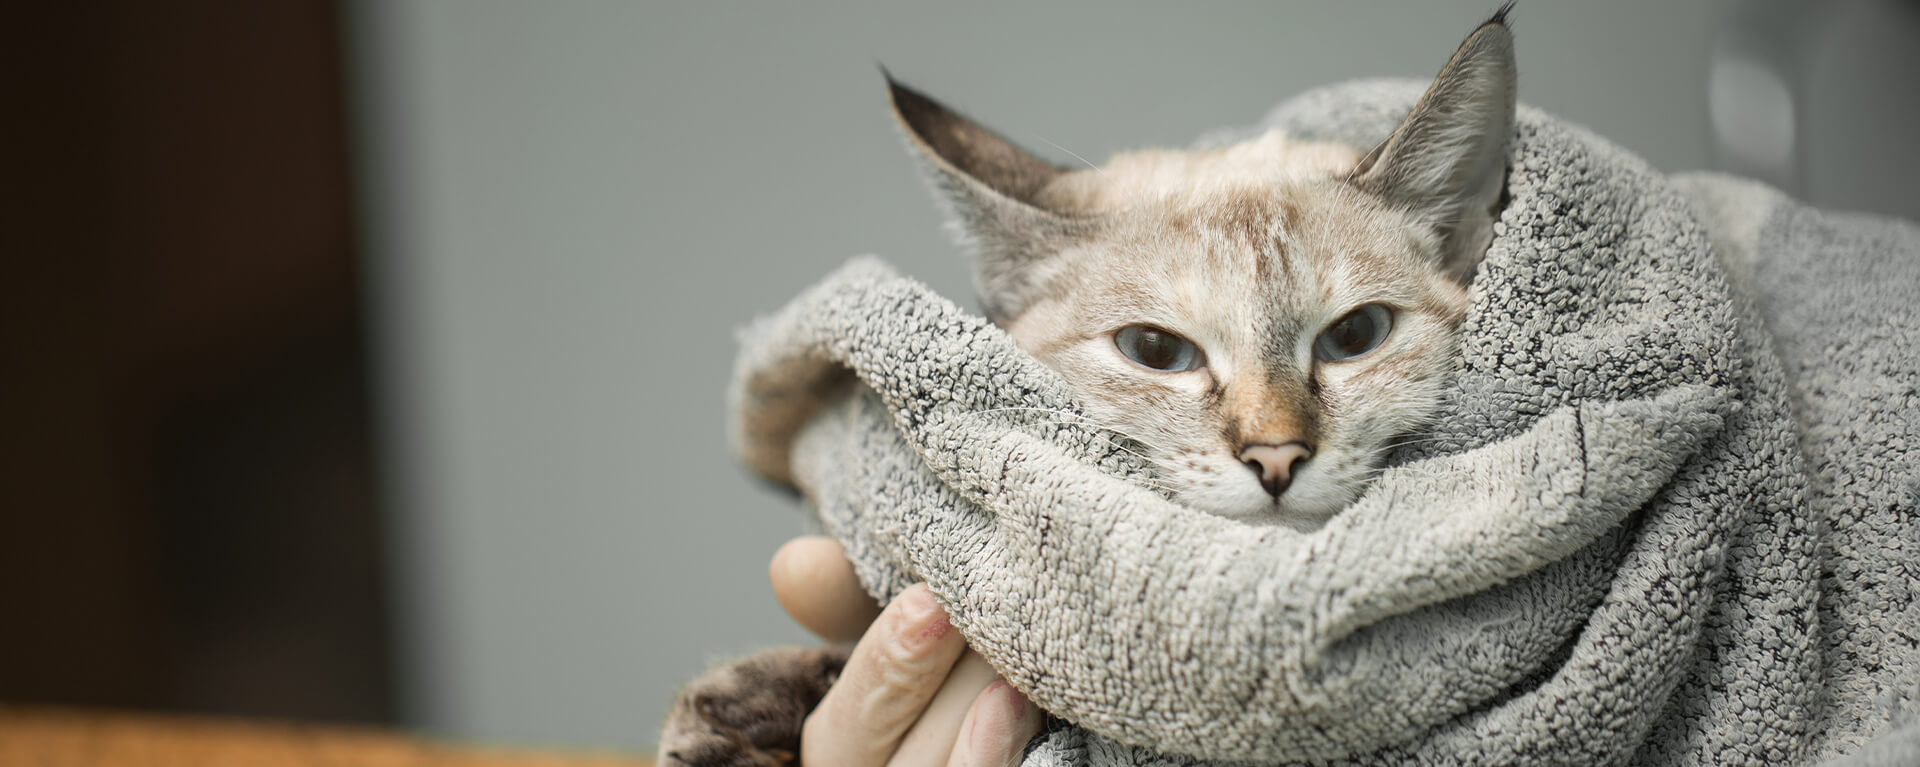 Что делать при травме у кошки - первая помощь, симптомы и лечение